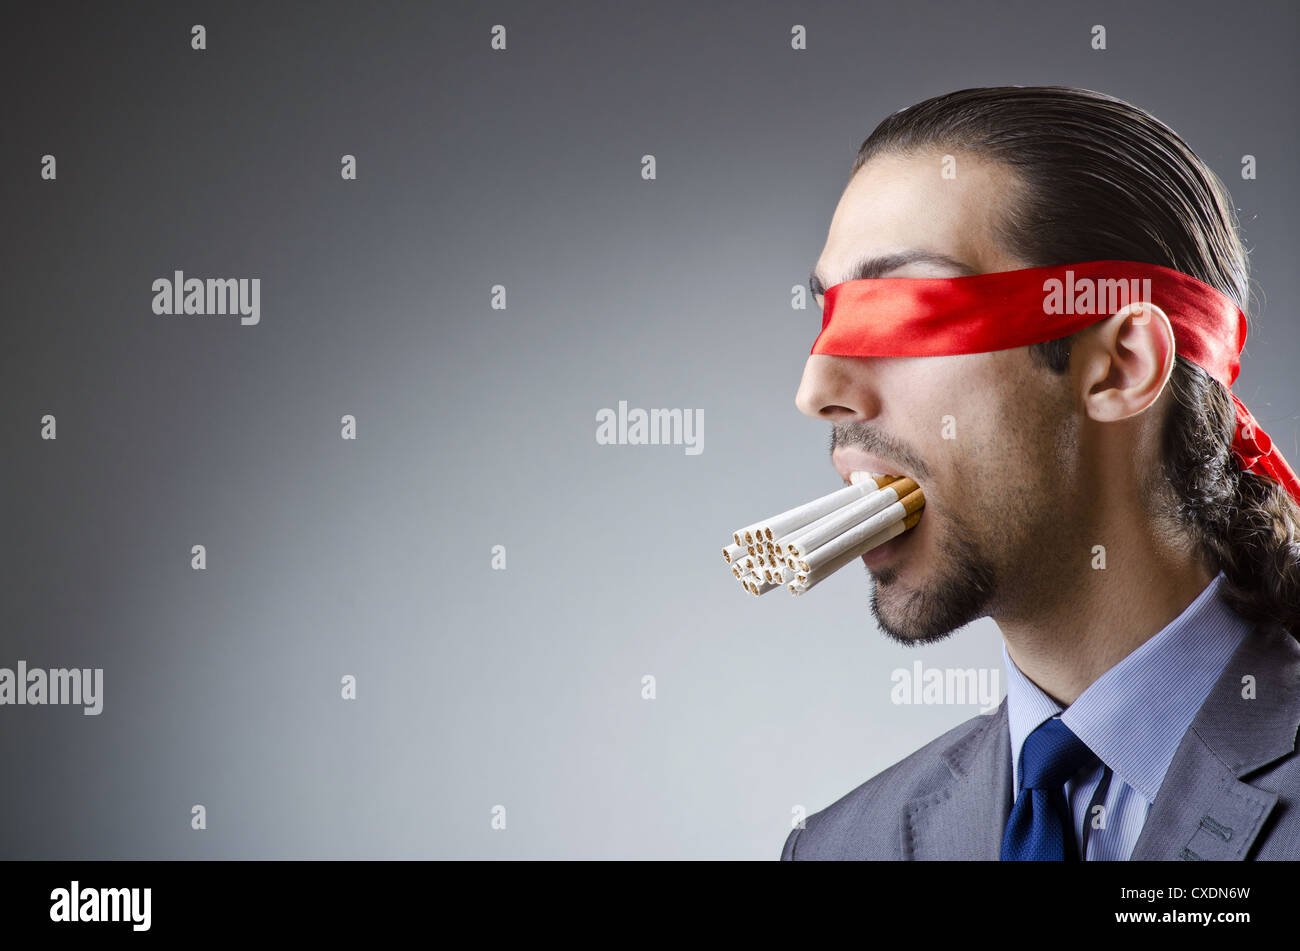 Запах сигарет во рту. Человек с полным ртом сигарет. Чел с полным ртом сигарет. Шпион с сигаретами во рту.